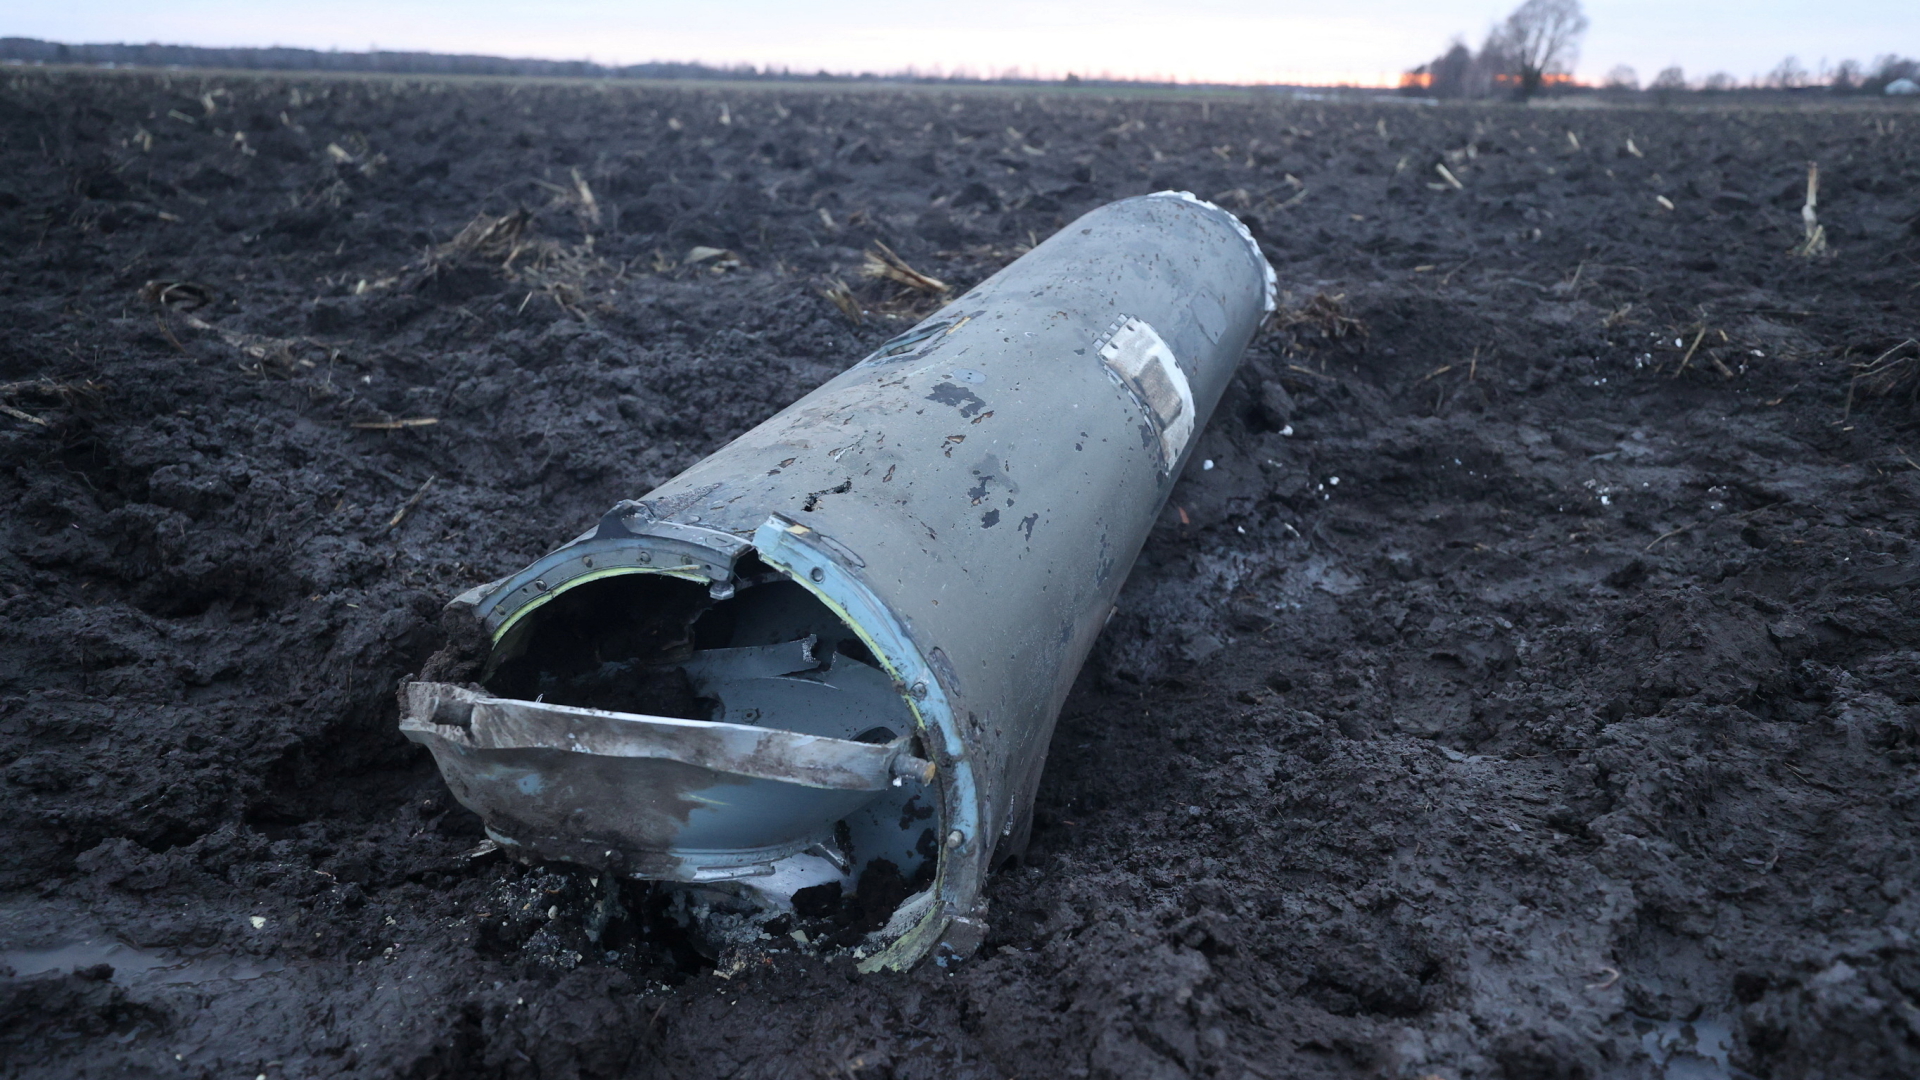 Das Fragment einer Rakete, die in Belarus gefunden wurde. | via REUTERS